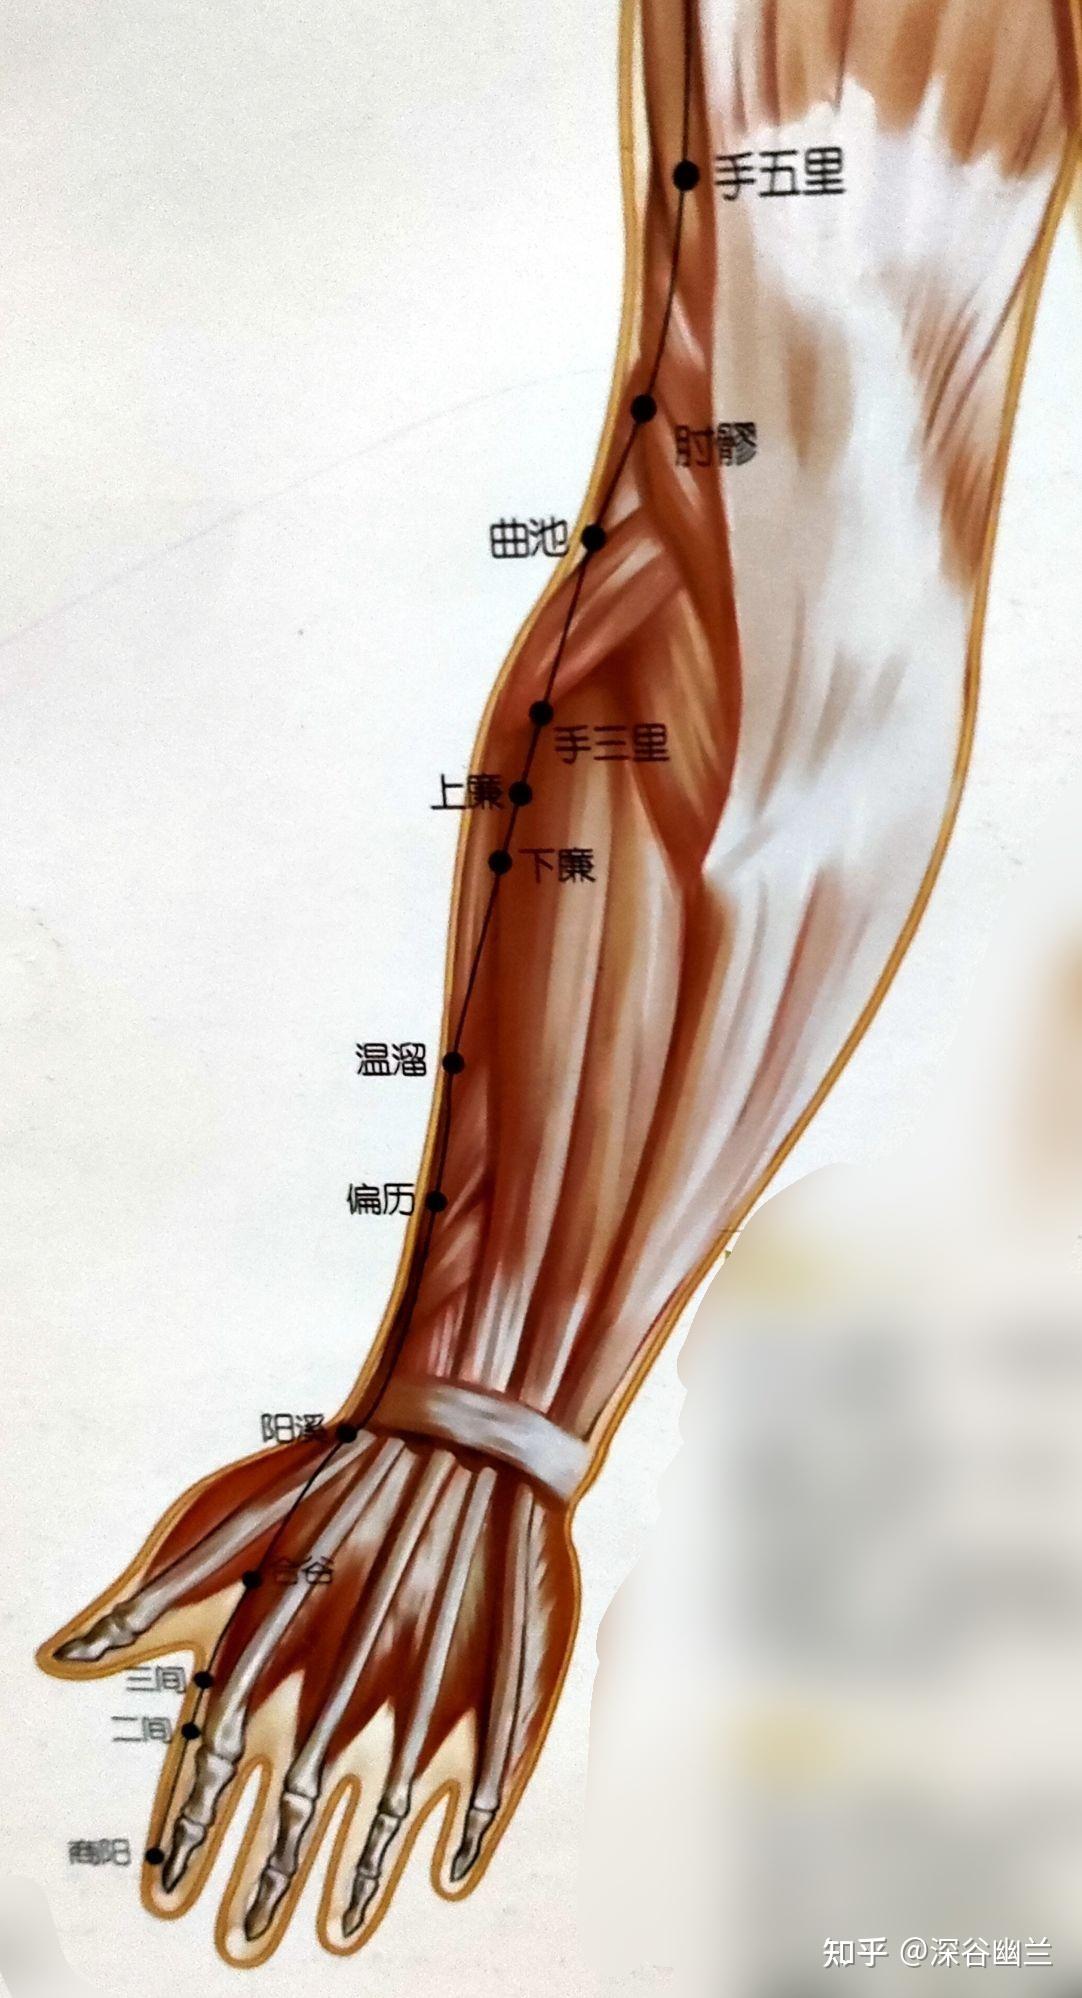 21,手三里(shou san li)穴在前臂背面桡侧,当阳溪与曲池连线上,肘横纹